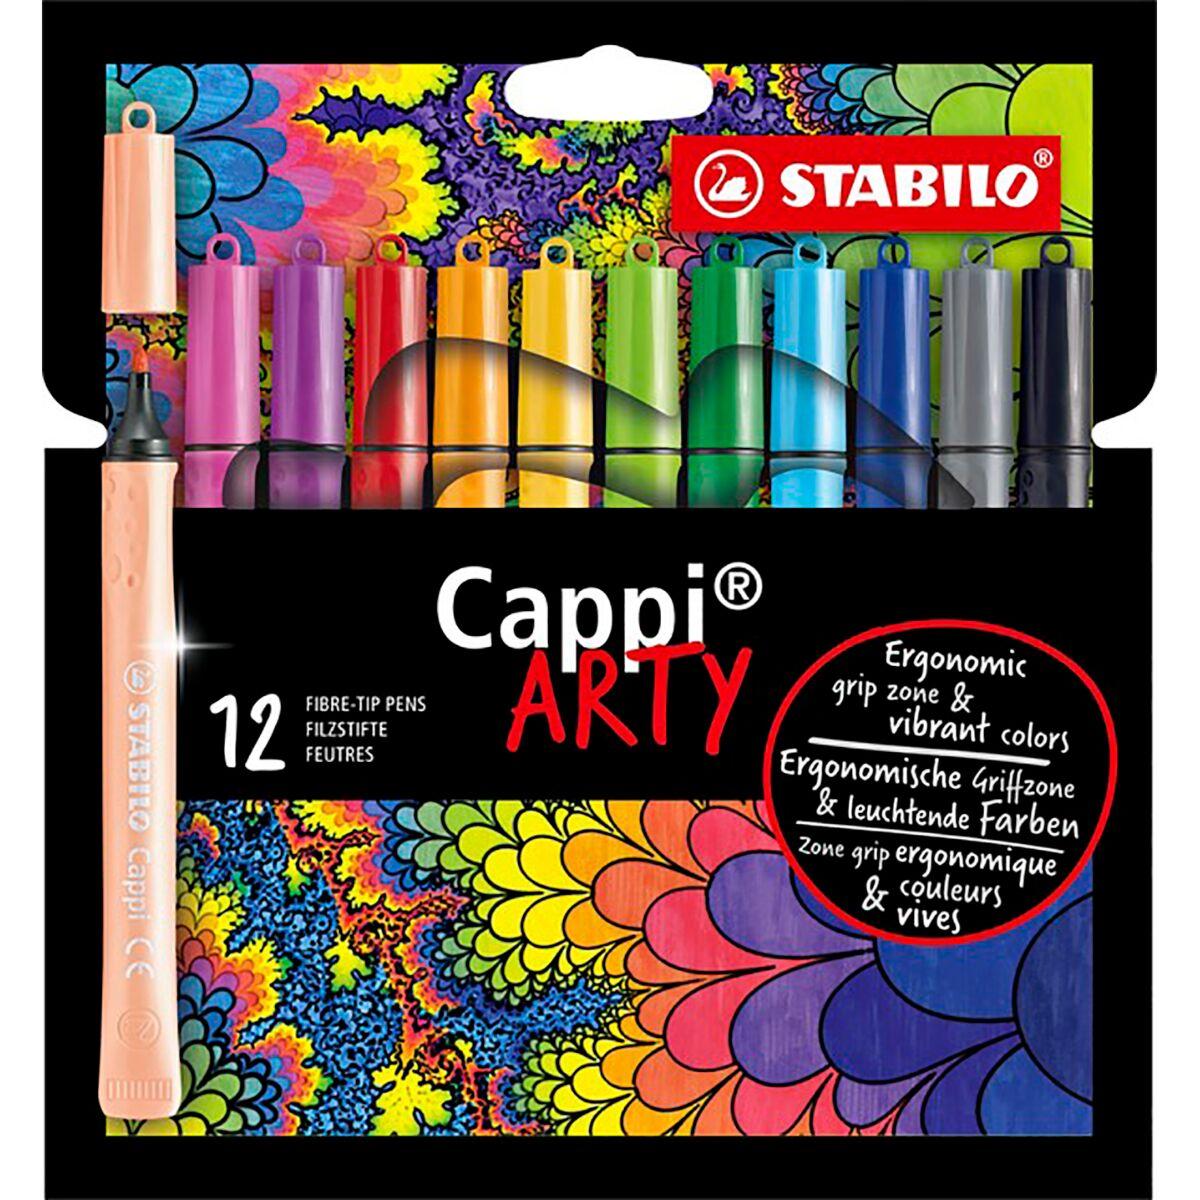 Фломастеры STABILO Cappi, с кольцом для колпачков, 12 цветов (серия Arty), фото 1